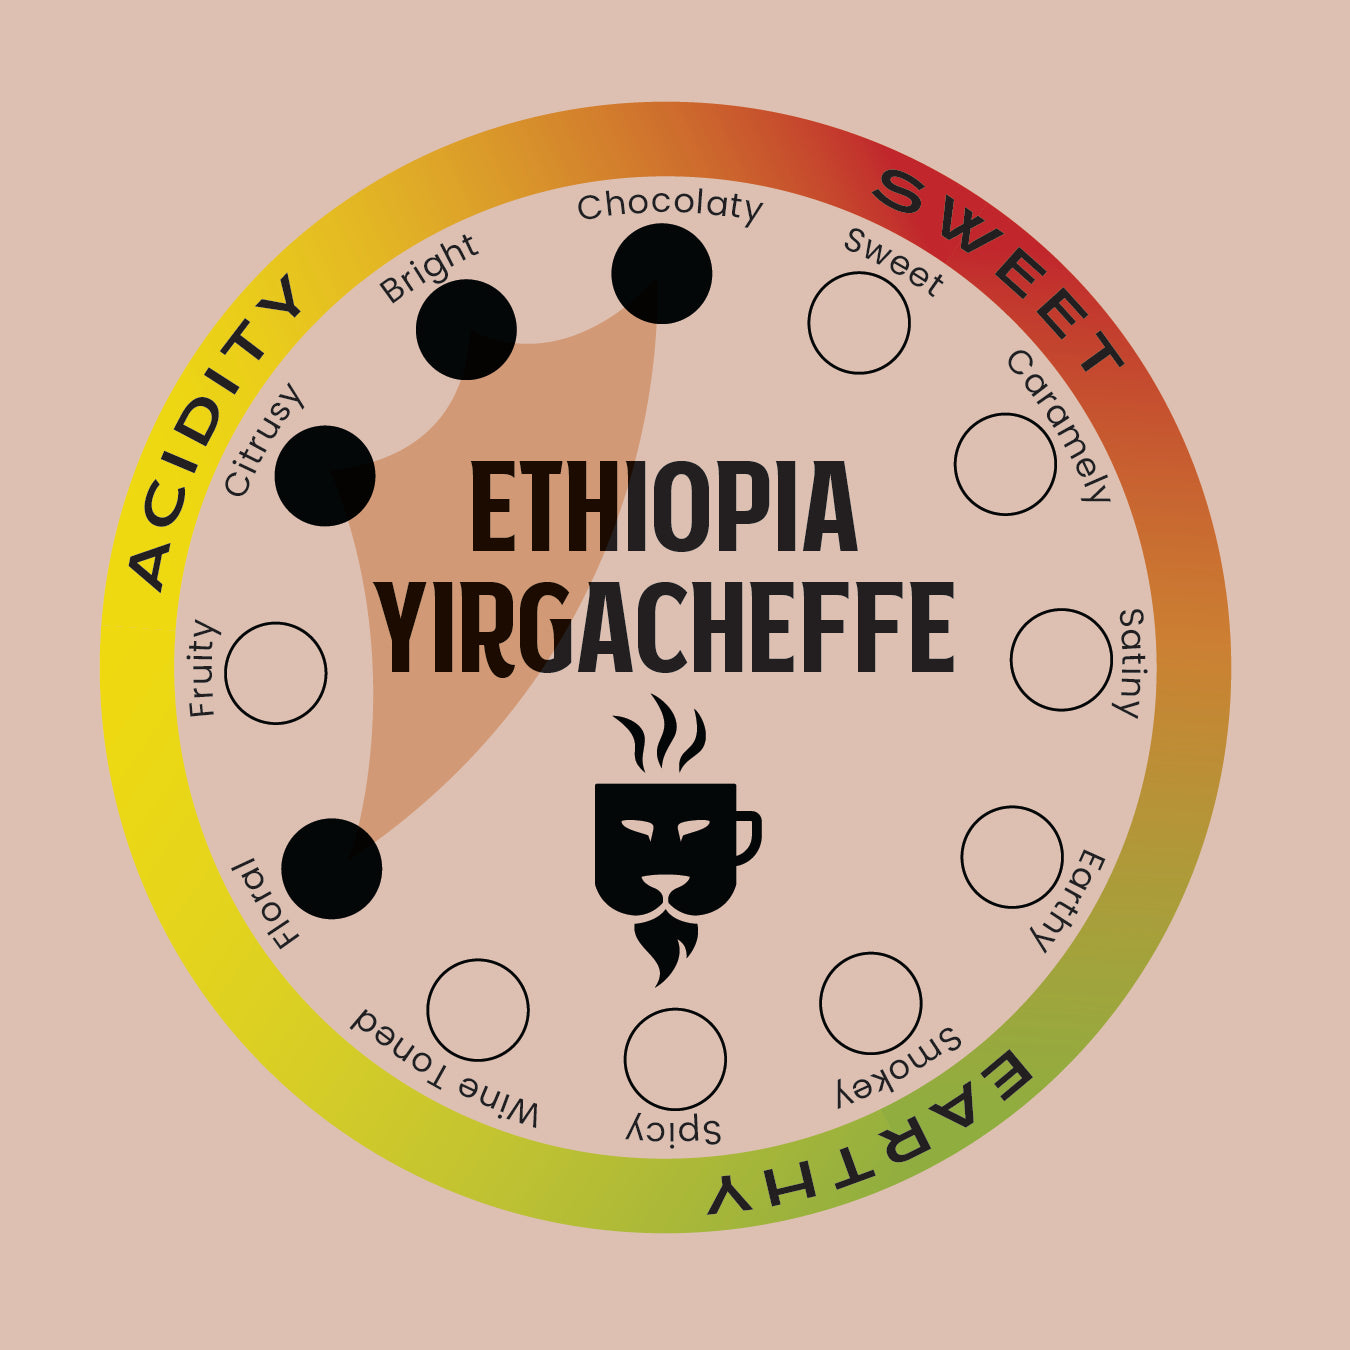 ETHIOPIAN YIRGACHEFFE COFFEE